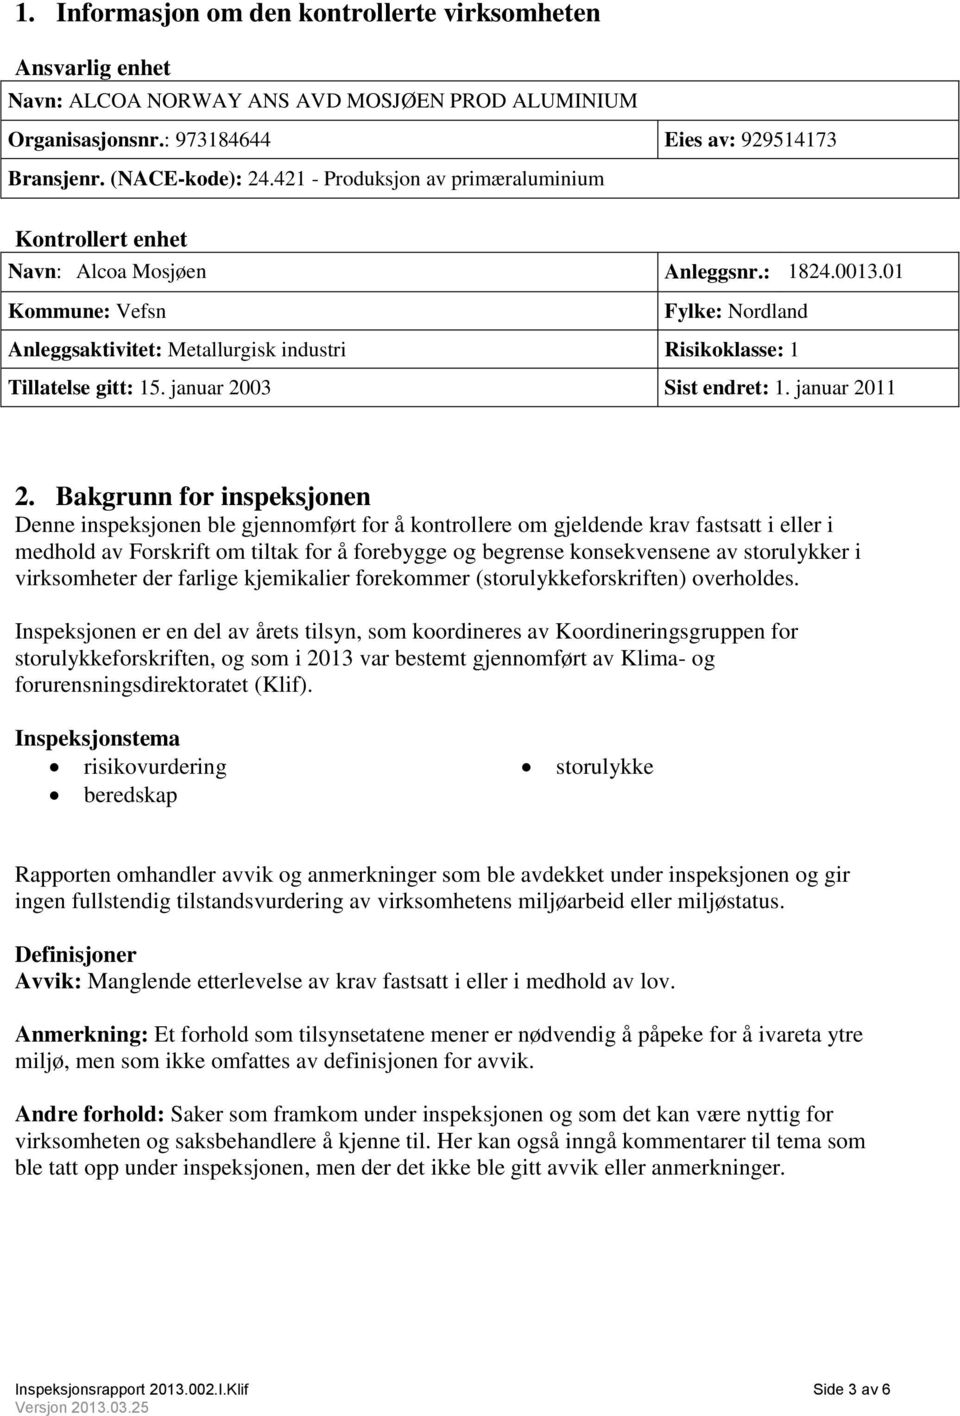 01 Kommune: Vefsn Fylke: Nordland Anleggsaktivitet: Metallurgisk industri Risikoklasse: 1 Tillatelse gitt: 15. januar 2003 Sist endret: 1. januar 2011 2.